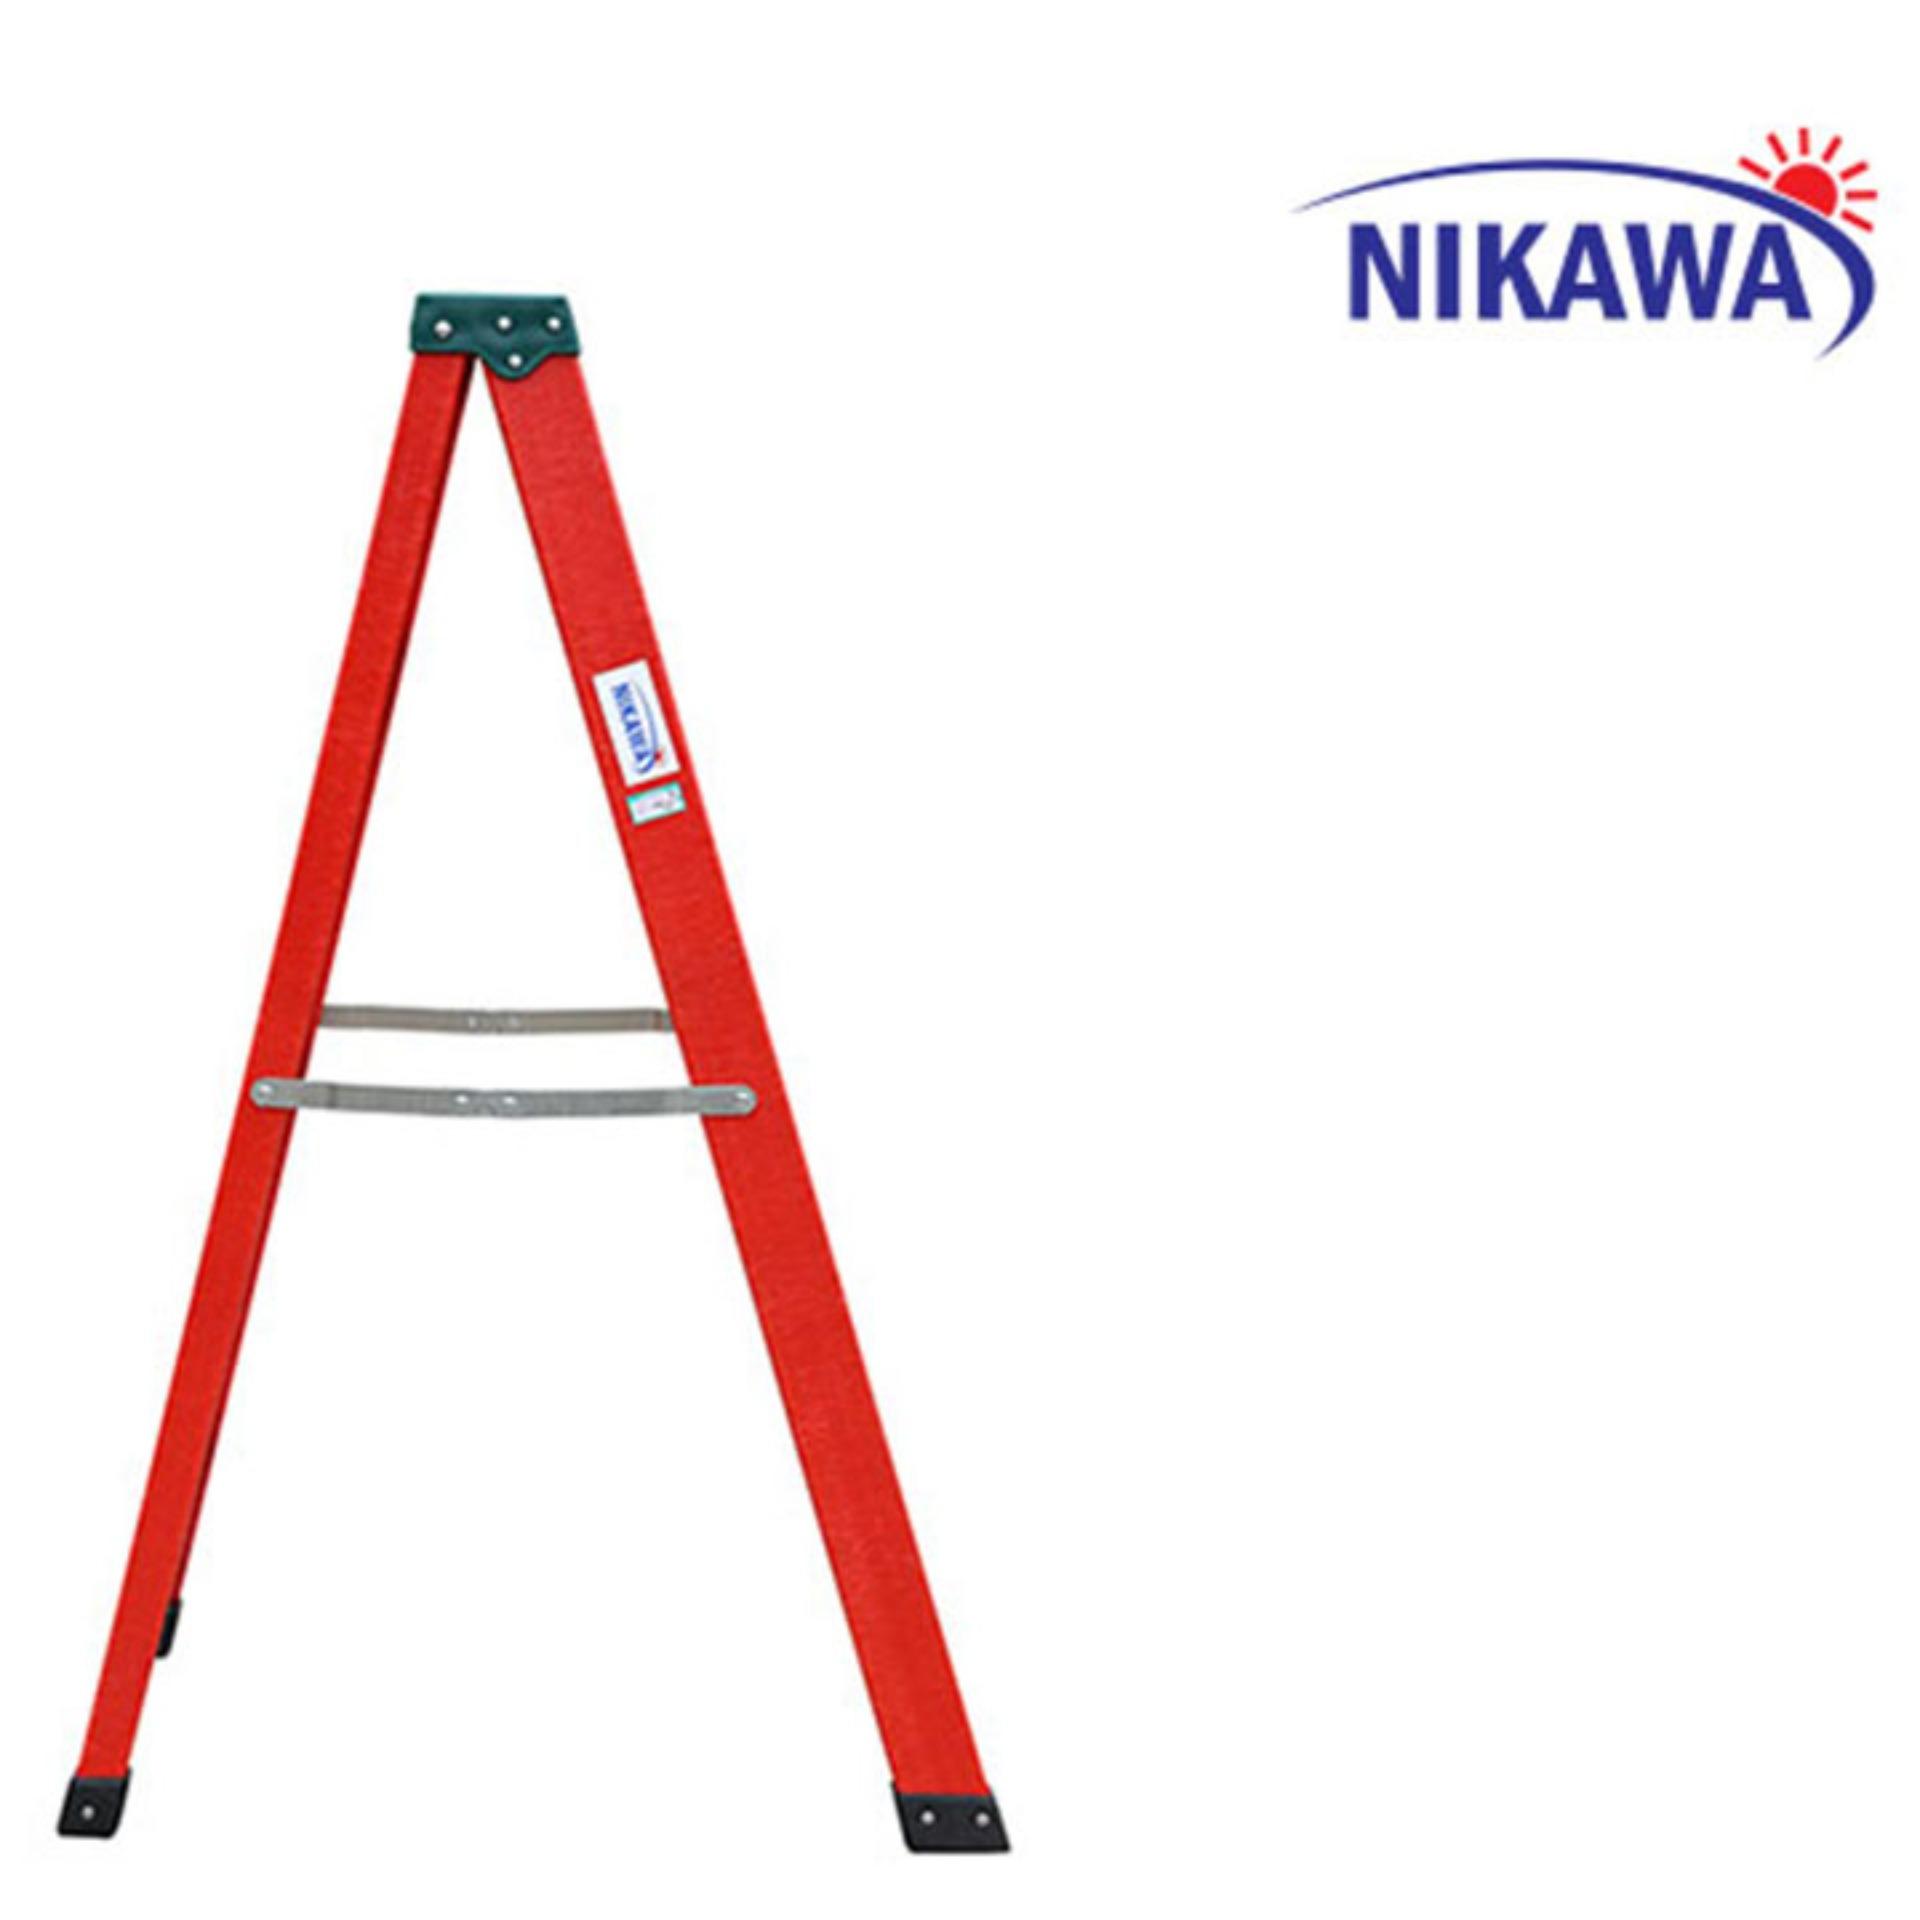 Thang nhôm chữ A Nikawa NKJ6C Nhật bản - 1,75m cách điện